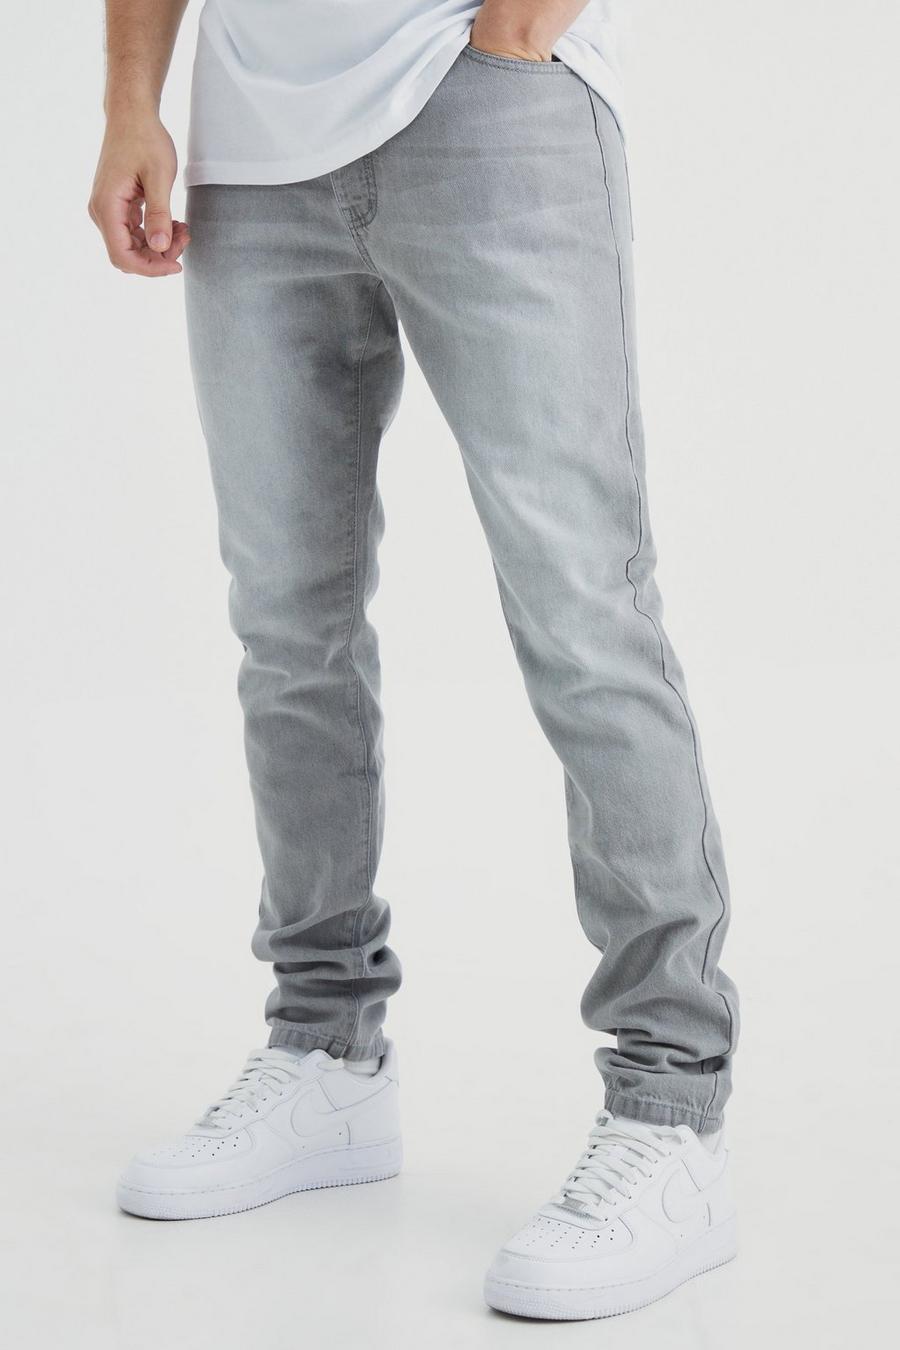 Jeans Tall Slim Fit in denim rigido, Mid grey